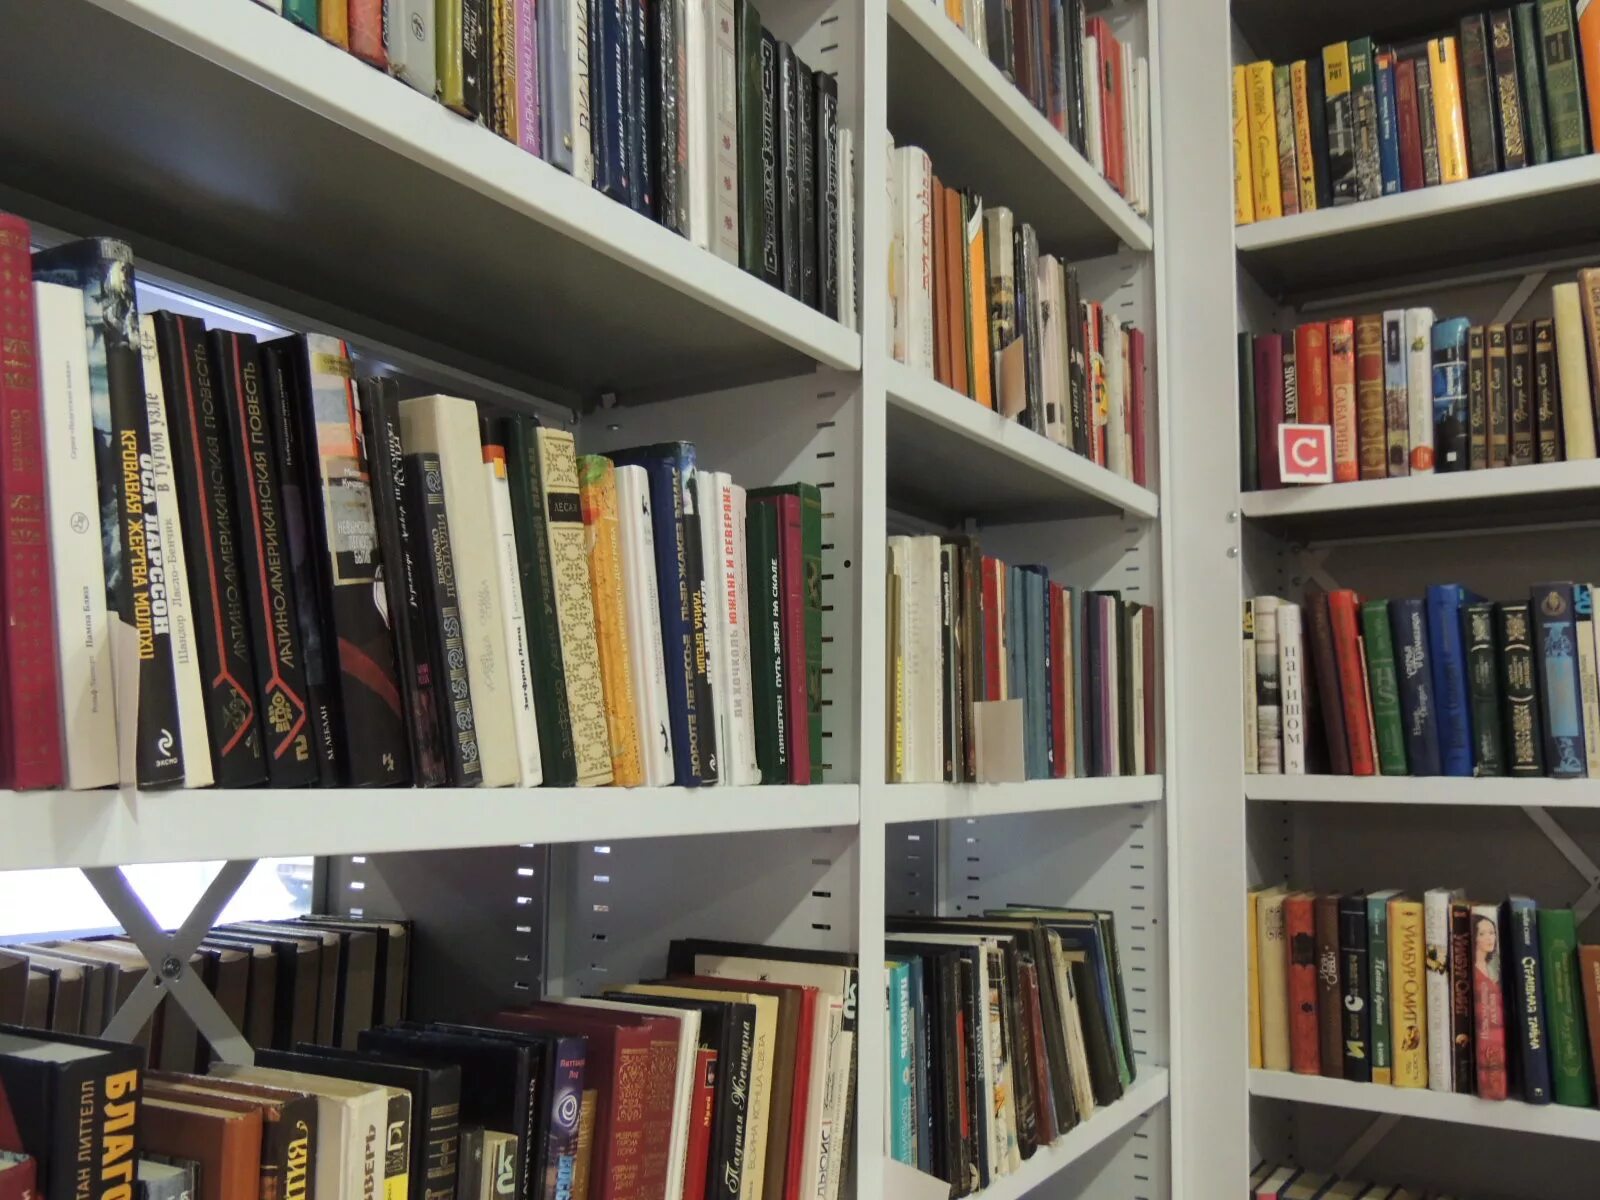 Библиотека на Микуцкого. Картинки обновленный книжный фонд. Модульная библиотека Богучанский район. Библиотека пополнилась стами книгами.